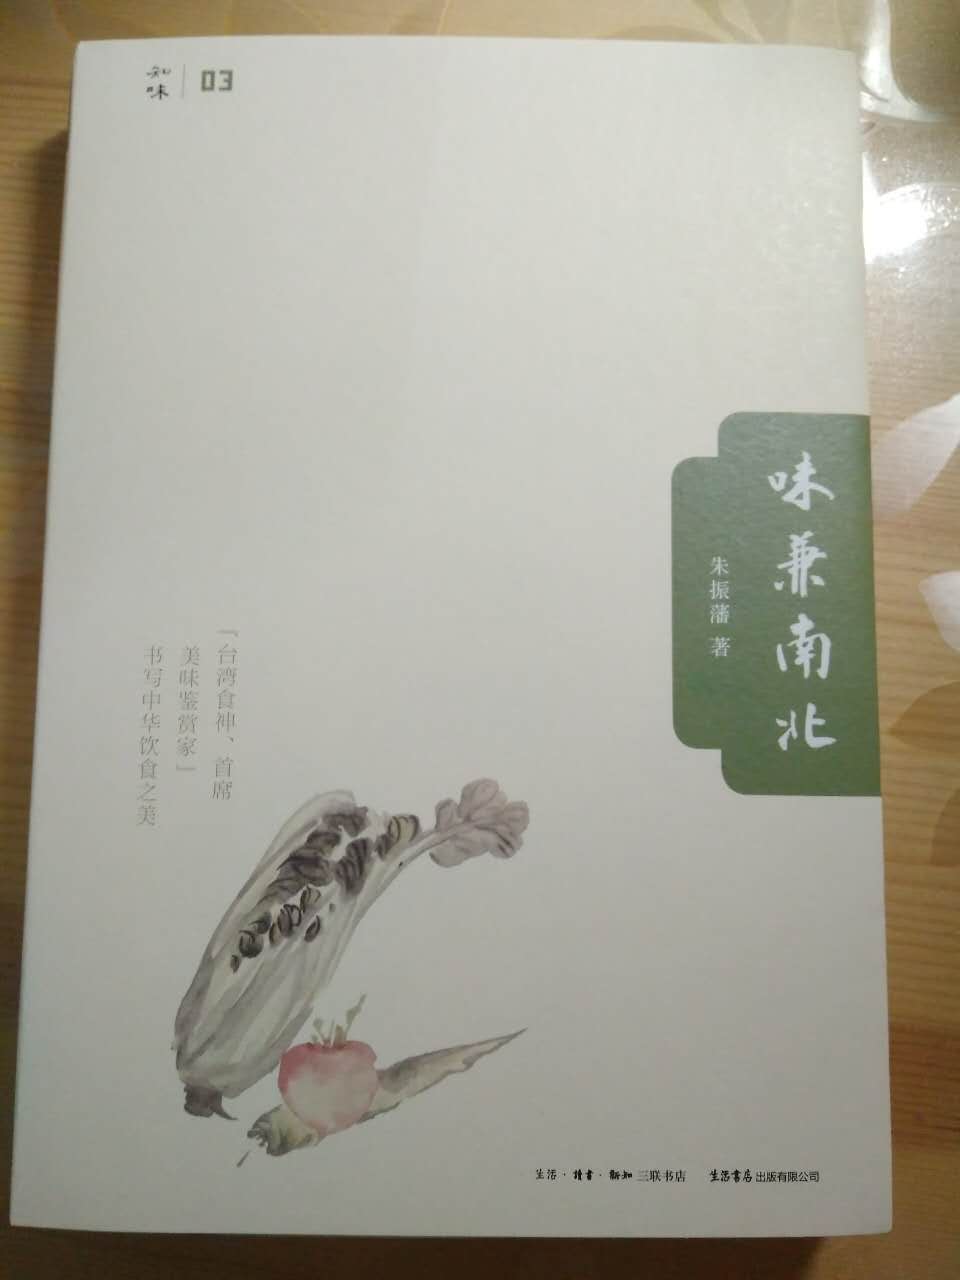 朱振藩的美食书有台湾的特色